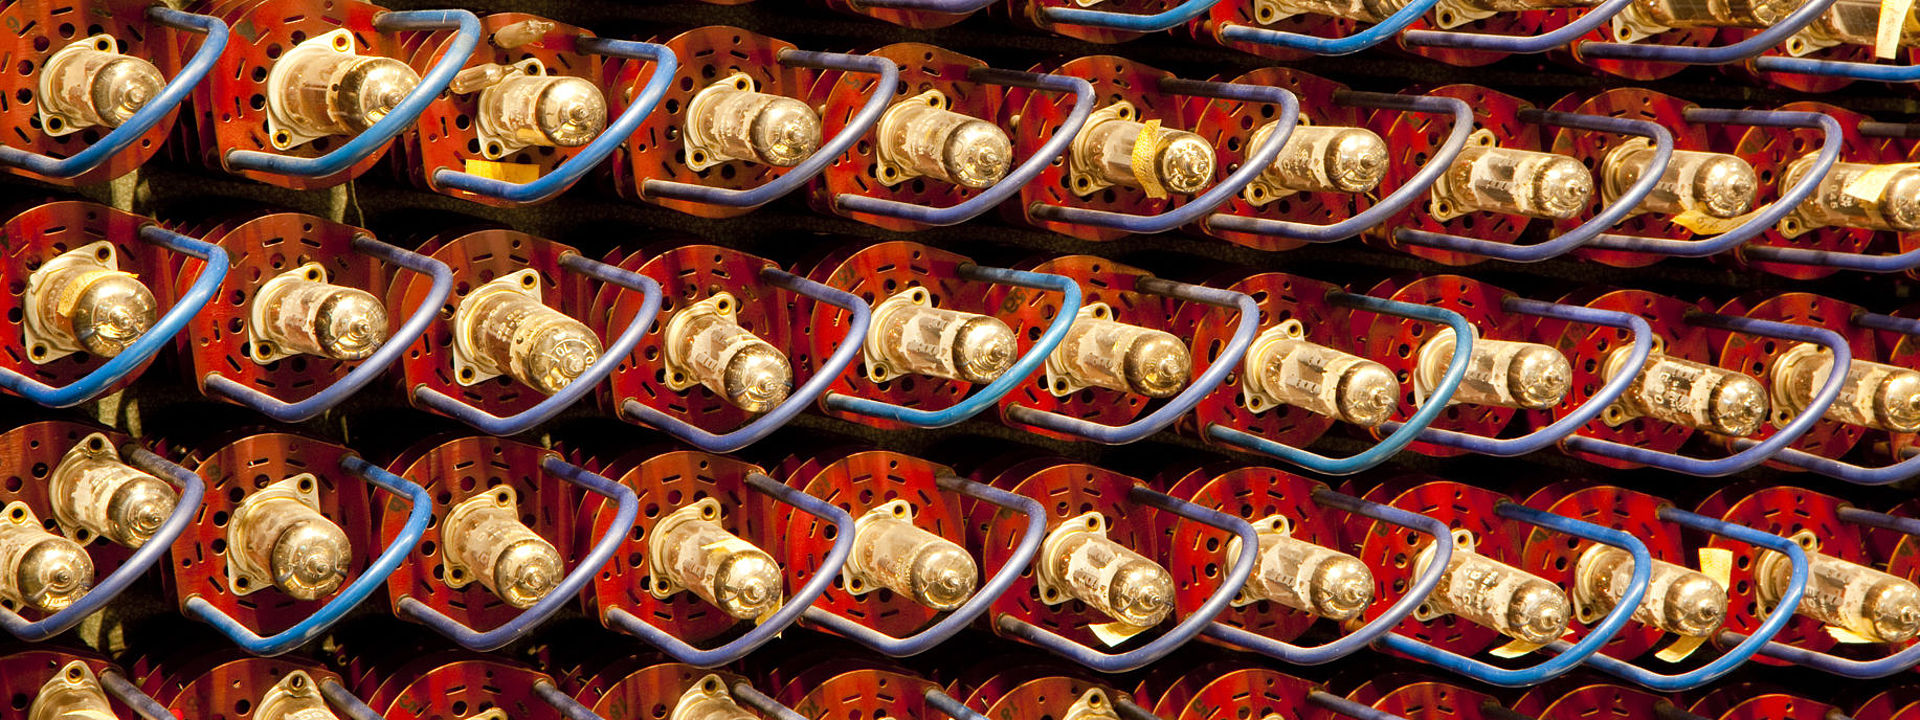 Bildfüllend: rote Elektroröhren mit goldfarbenen Metallkappen und blauen Bügeln